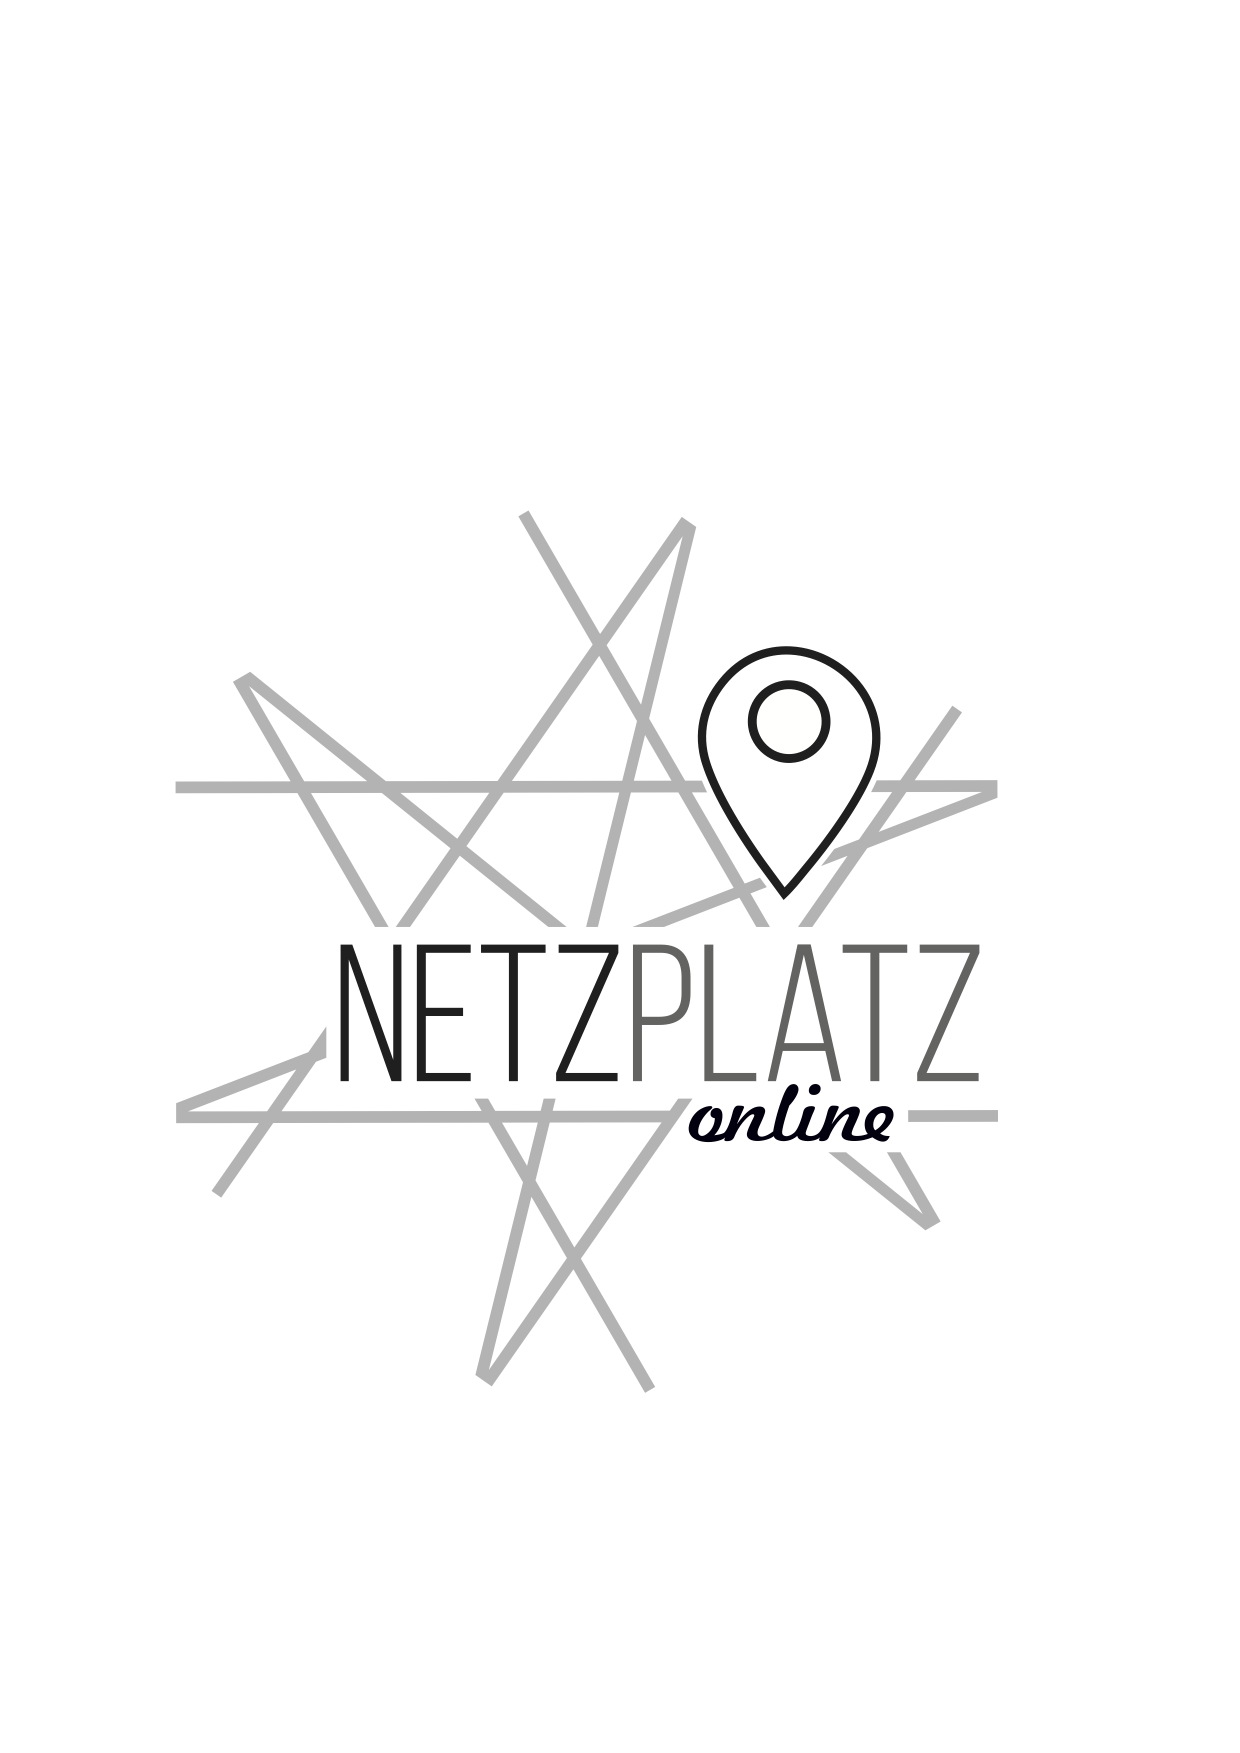 Netzplatzonline Logo